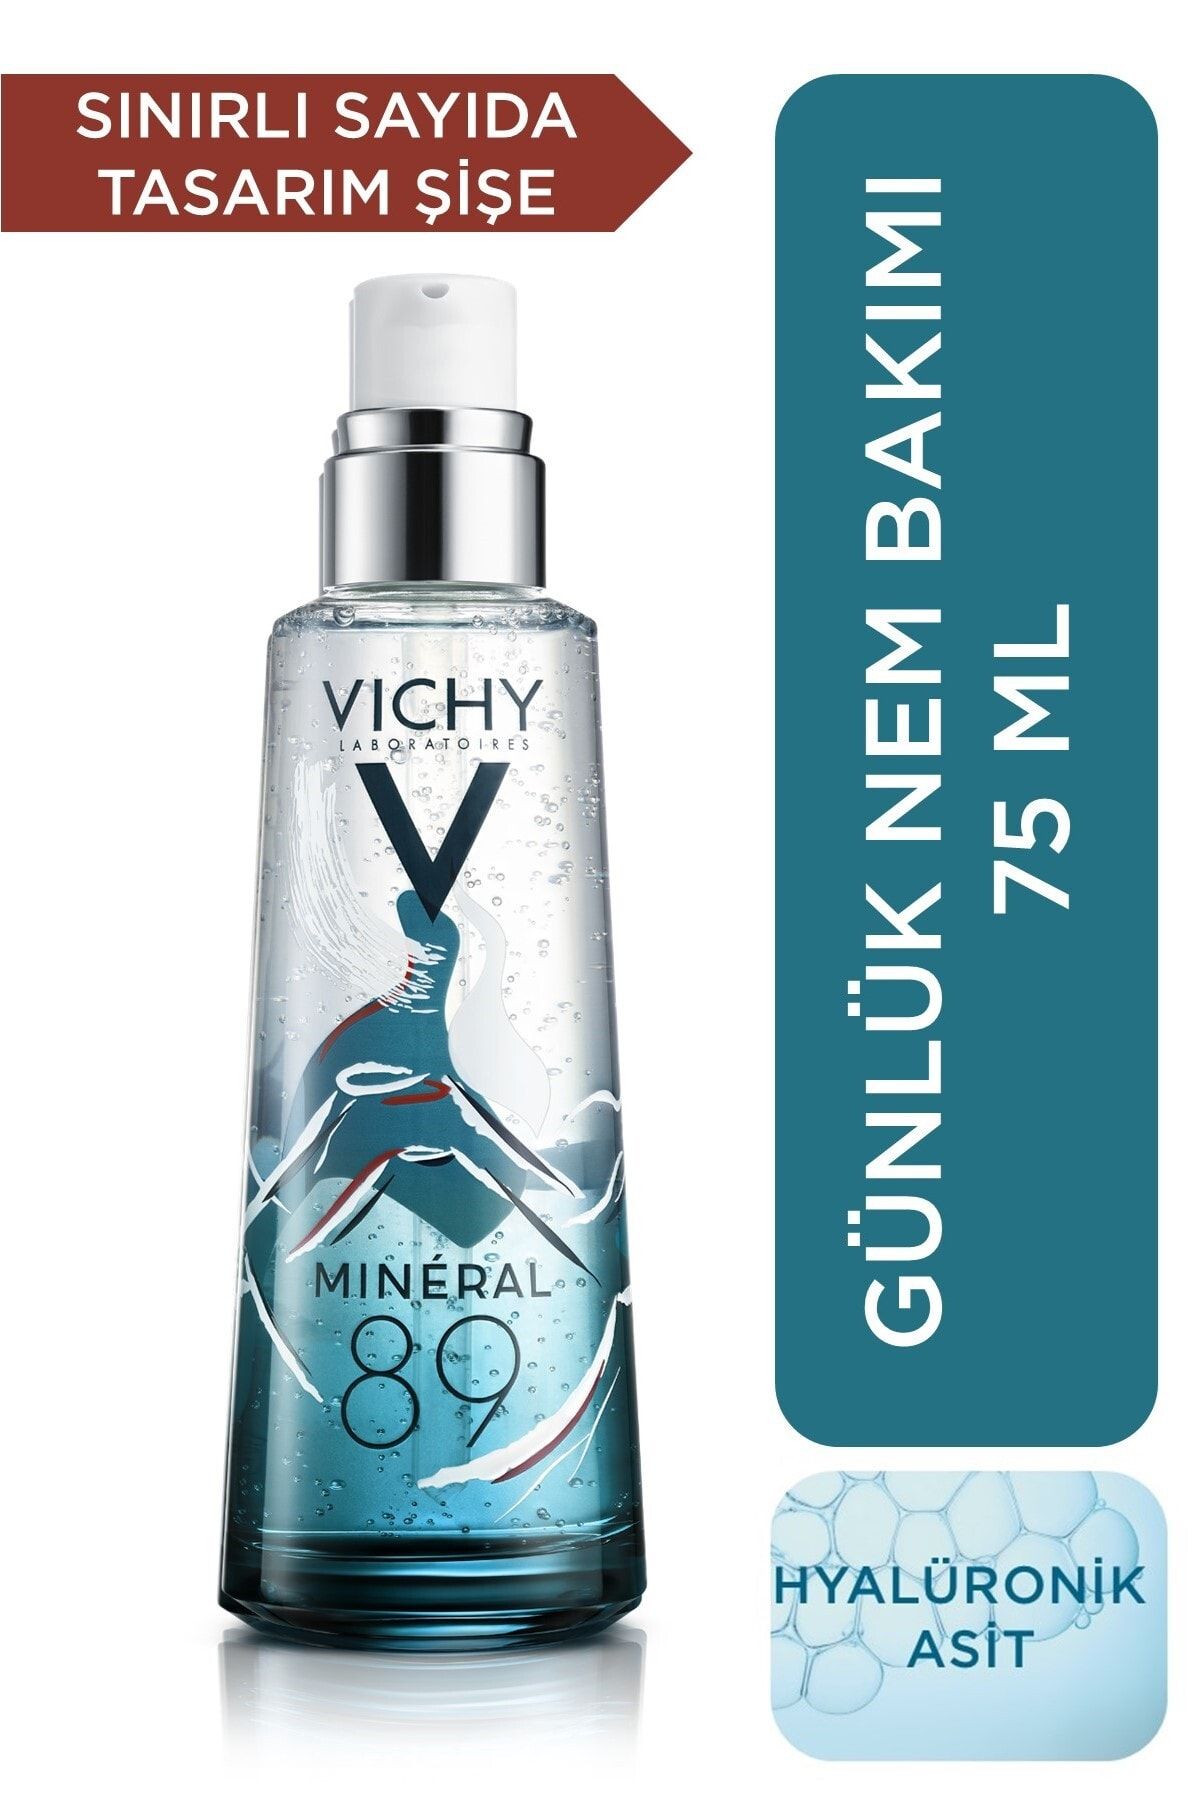 Vichy Mineral 89 Hyalüronik Asit İçeren Nemlendirici ve Güçlendirici Serum 75 ml 3337875742993